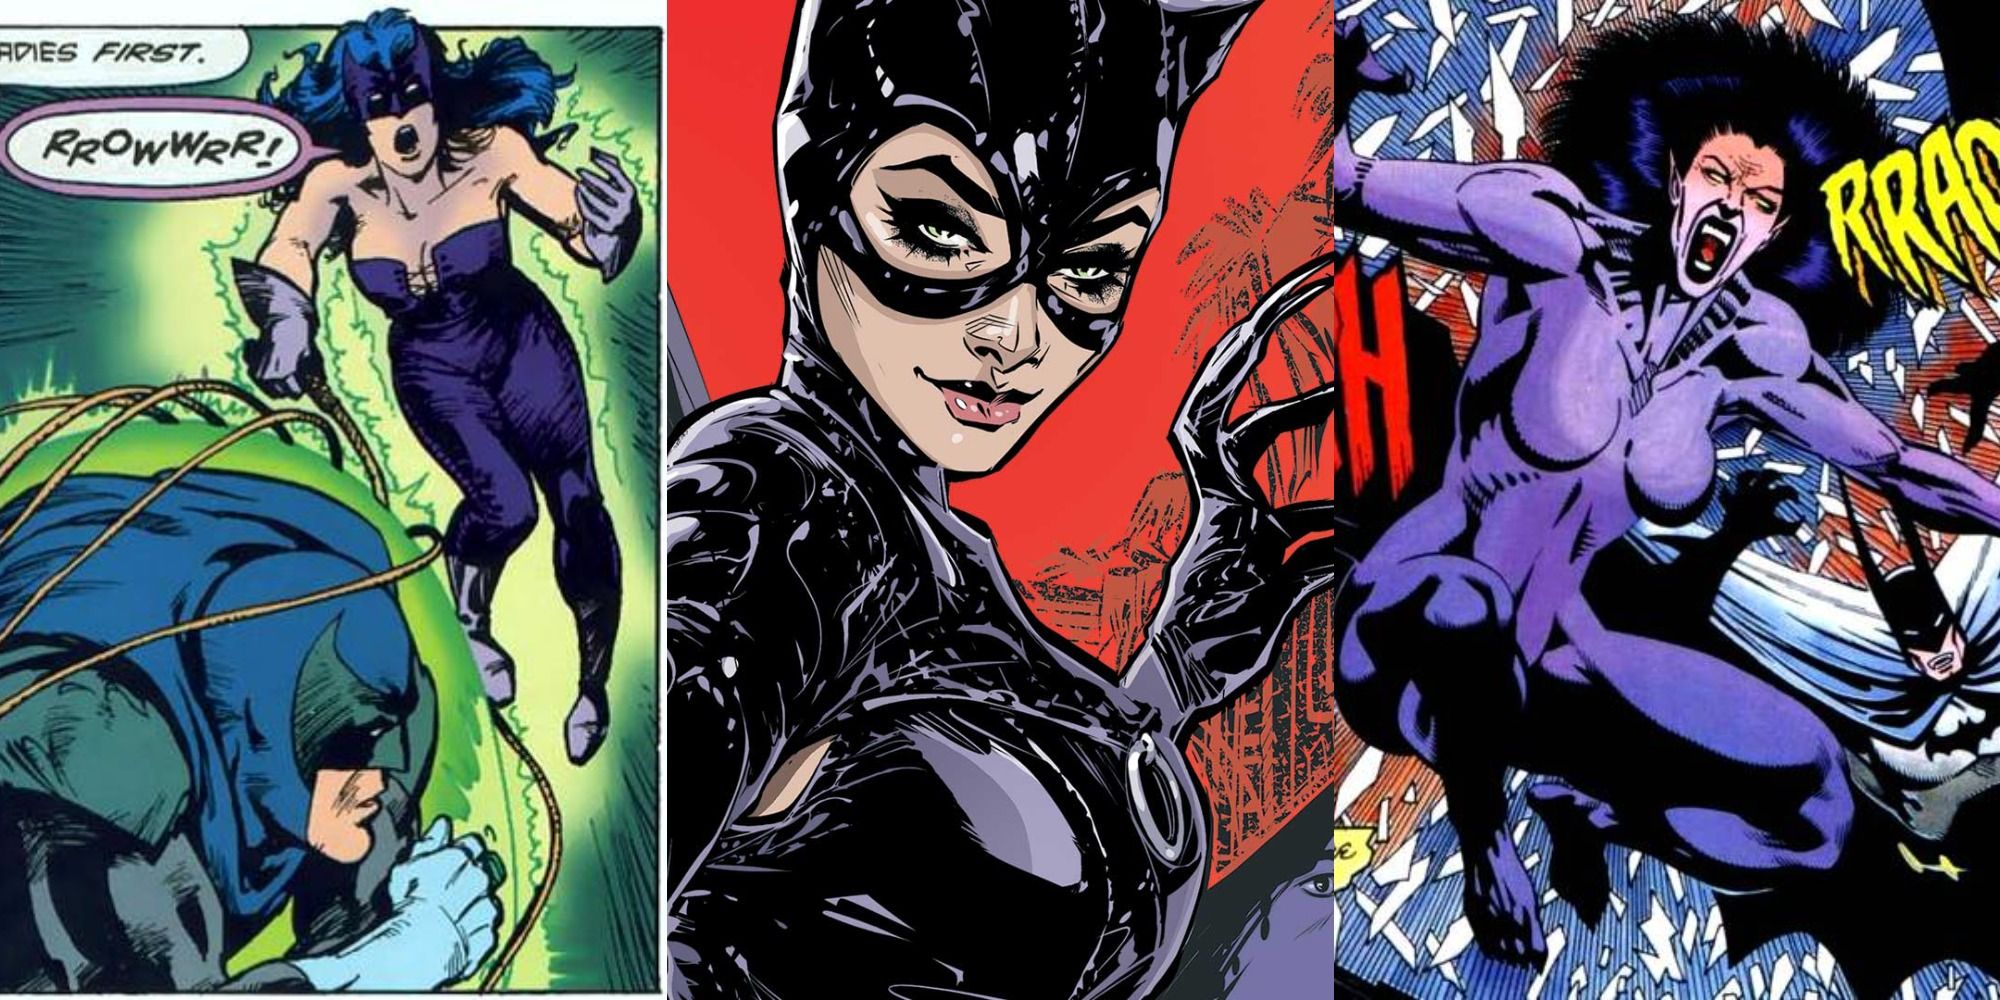 Weirdest Versions of Catwoman Star Sapphire Catwoman, Normal Catwoman, and Were-Cat Cat-Woman Split Featured